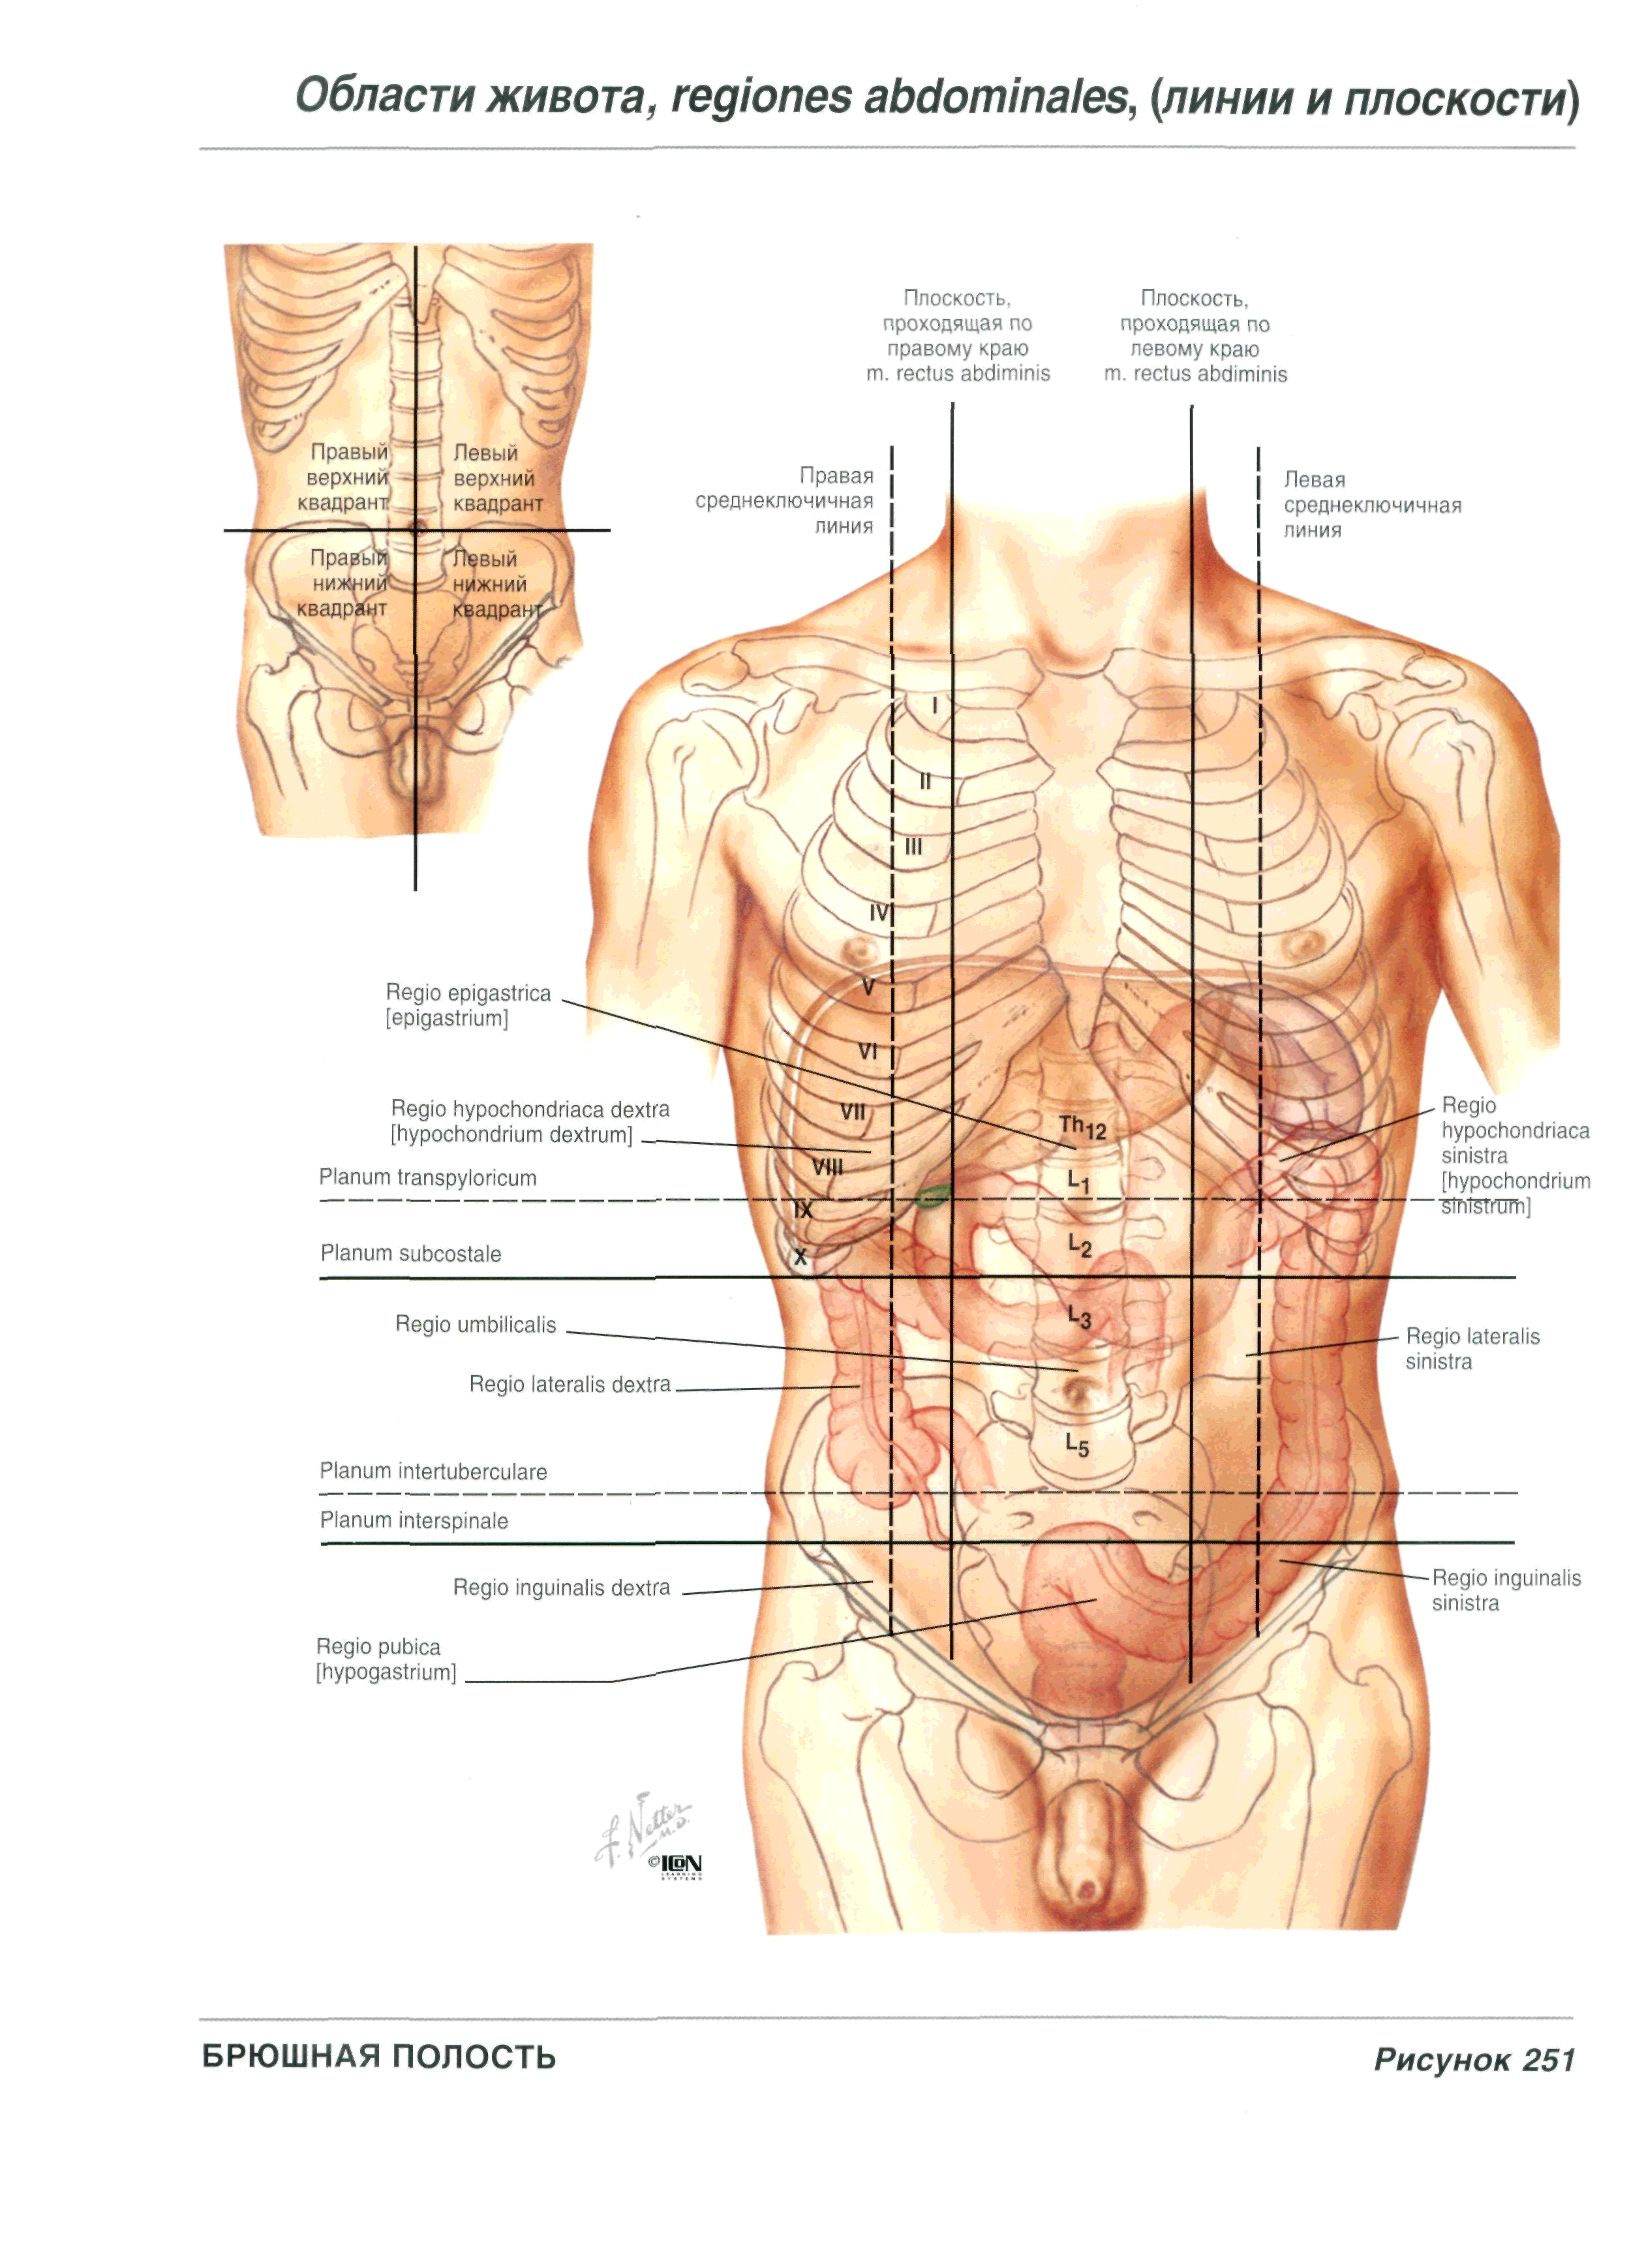 Болит левый бок живота у мужчины спереди. Анатомия человека правый бок. Левое подреберье анатомия. Анатомия левый бок. Болит живот под левым ребром спереди что это.